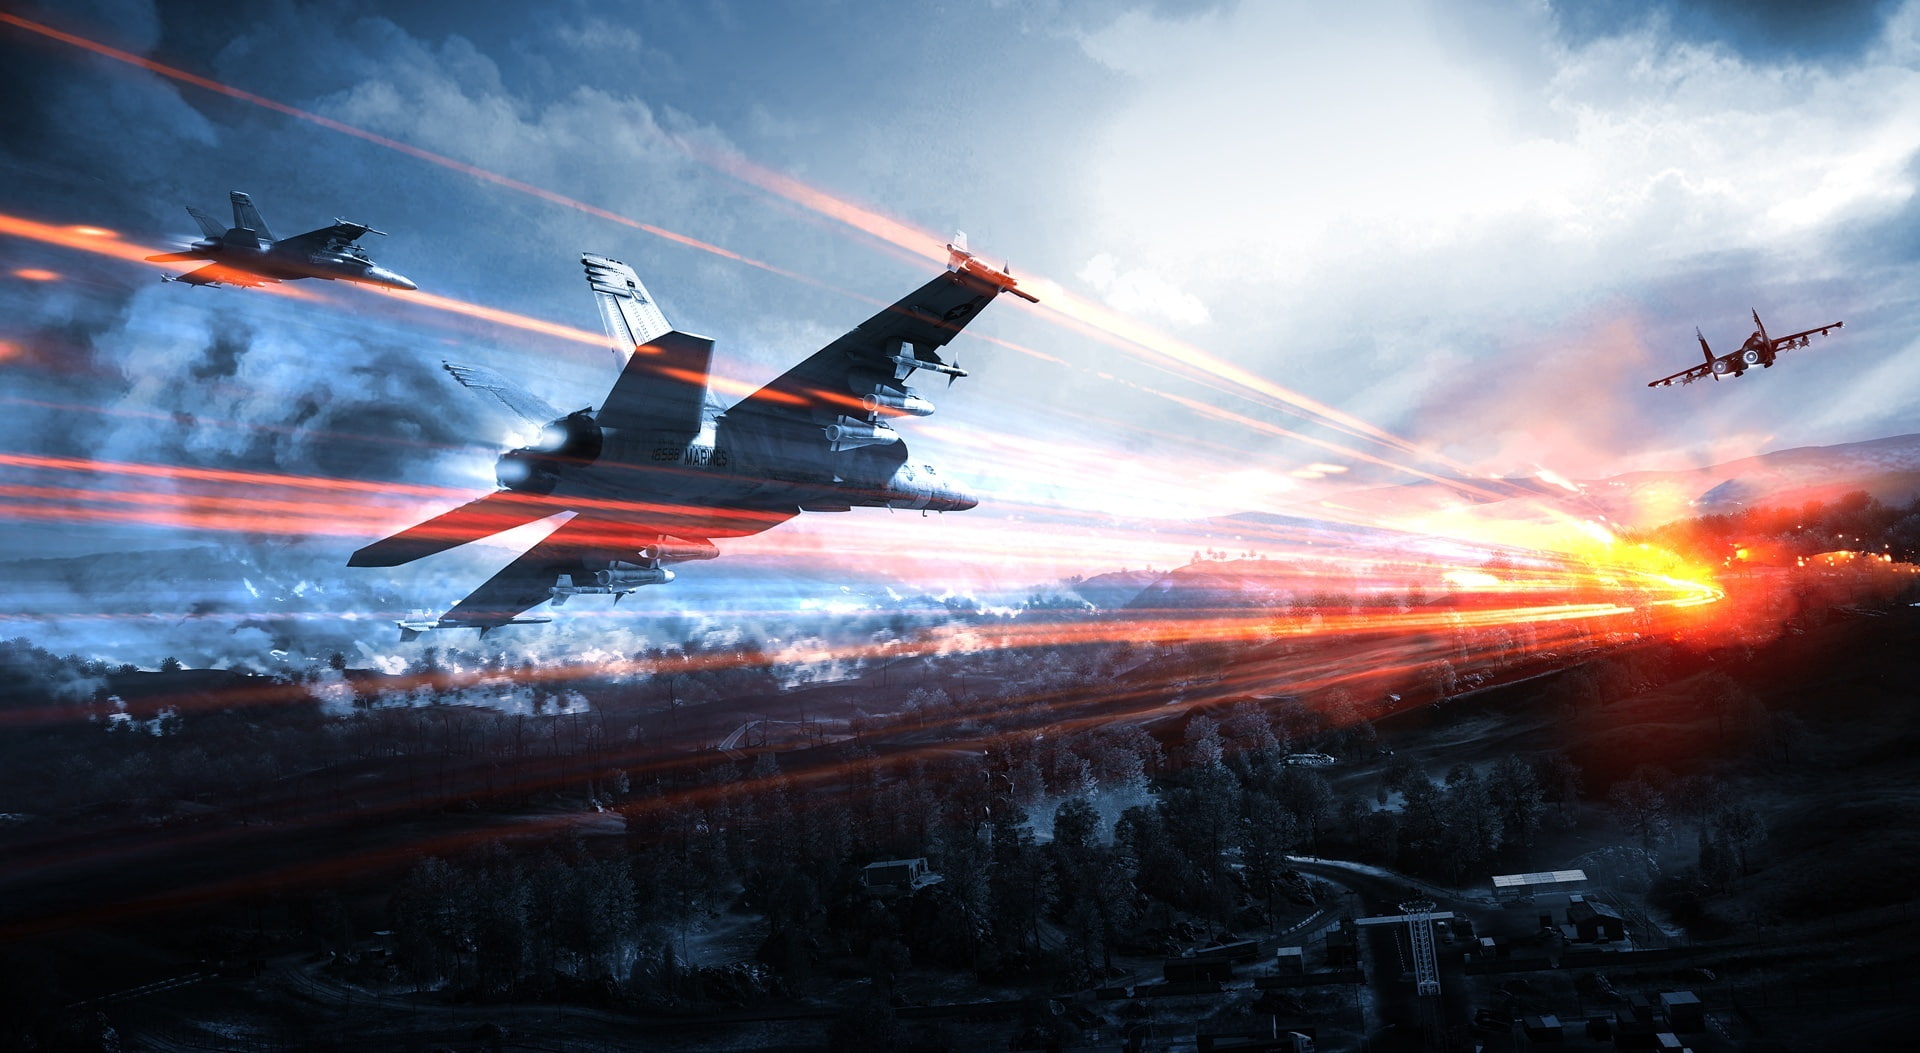 Battlefield 3 - Caspian Border, two aircraft wallpaper, Games